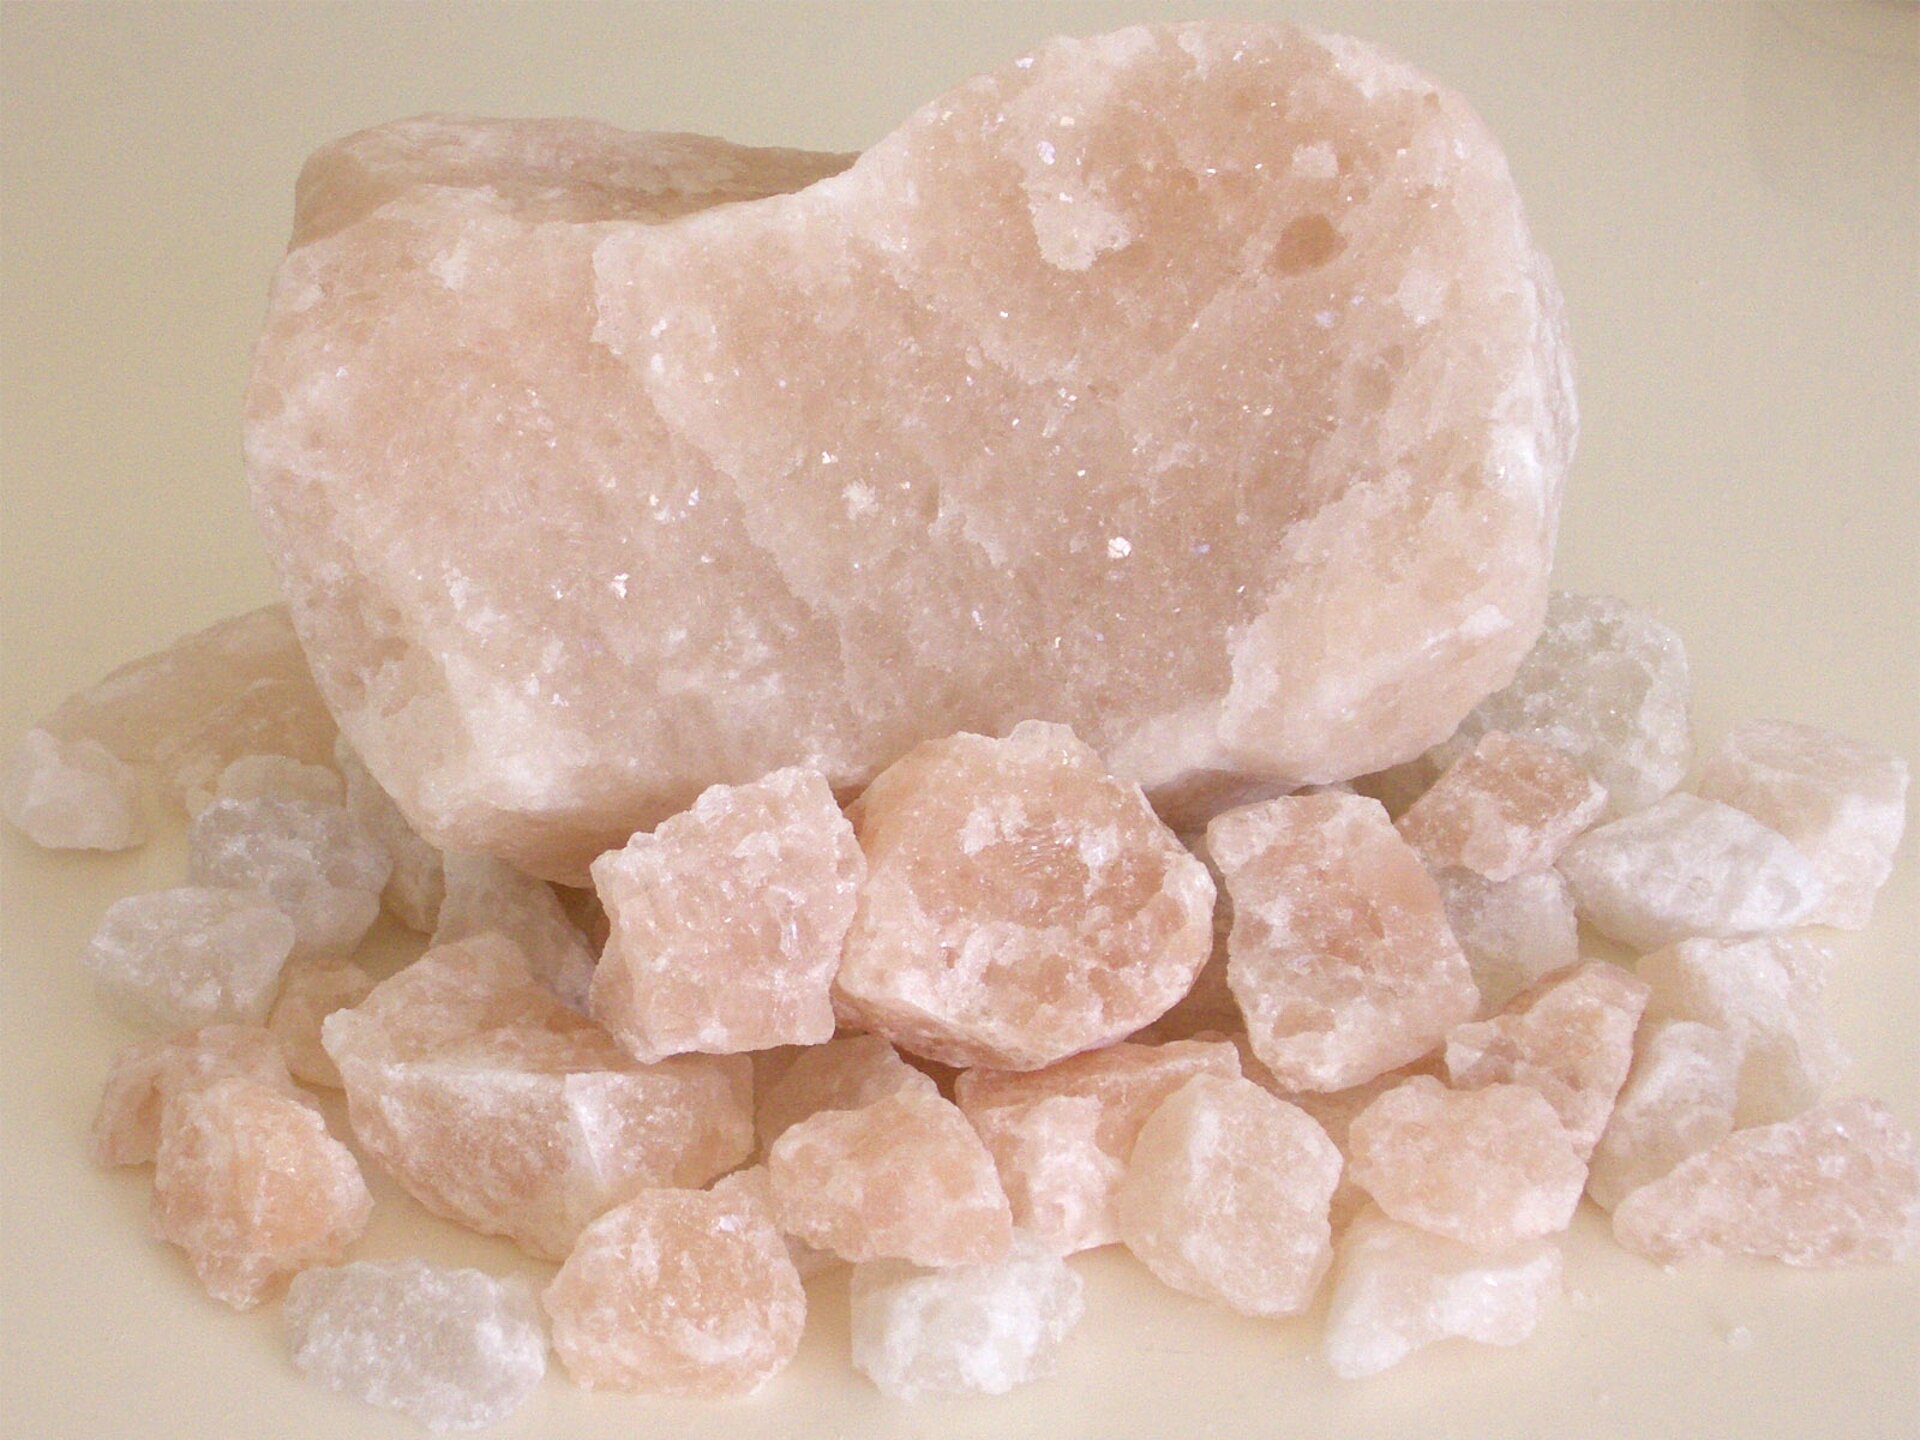 Na zdjęciu przedstawiona jest sól kamienna – kilka bryłek w postaci nieregularnych wieloboków. Jedna duża, wielkości pięści i kilkanaście małych, wielkości kostki do gry. Barwa różowa, szklista.